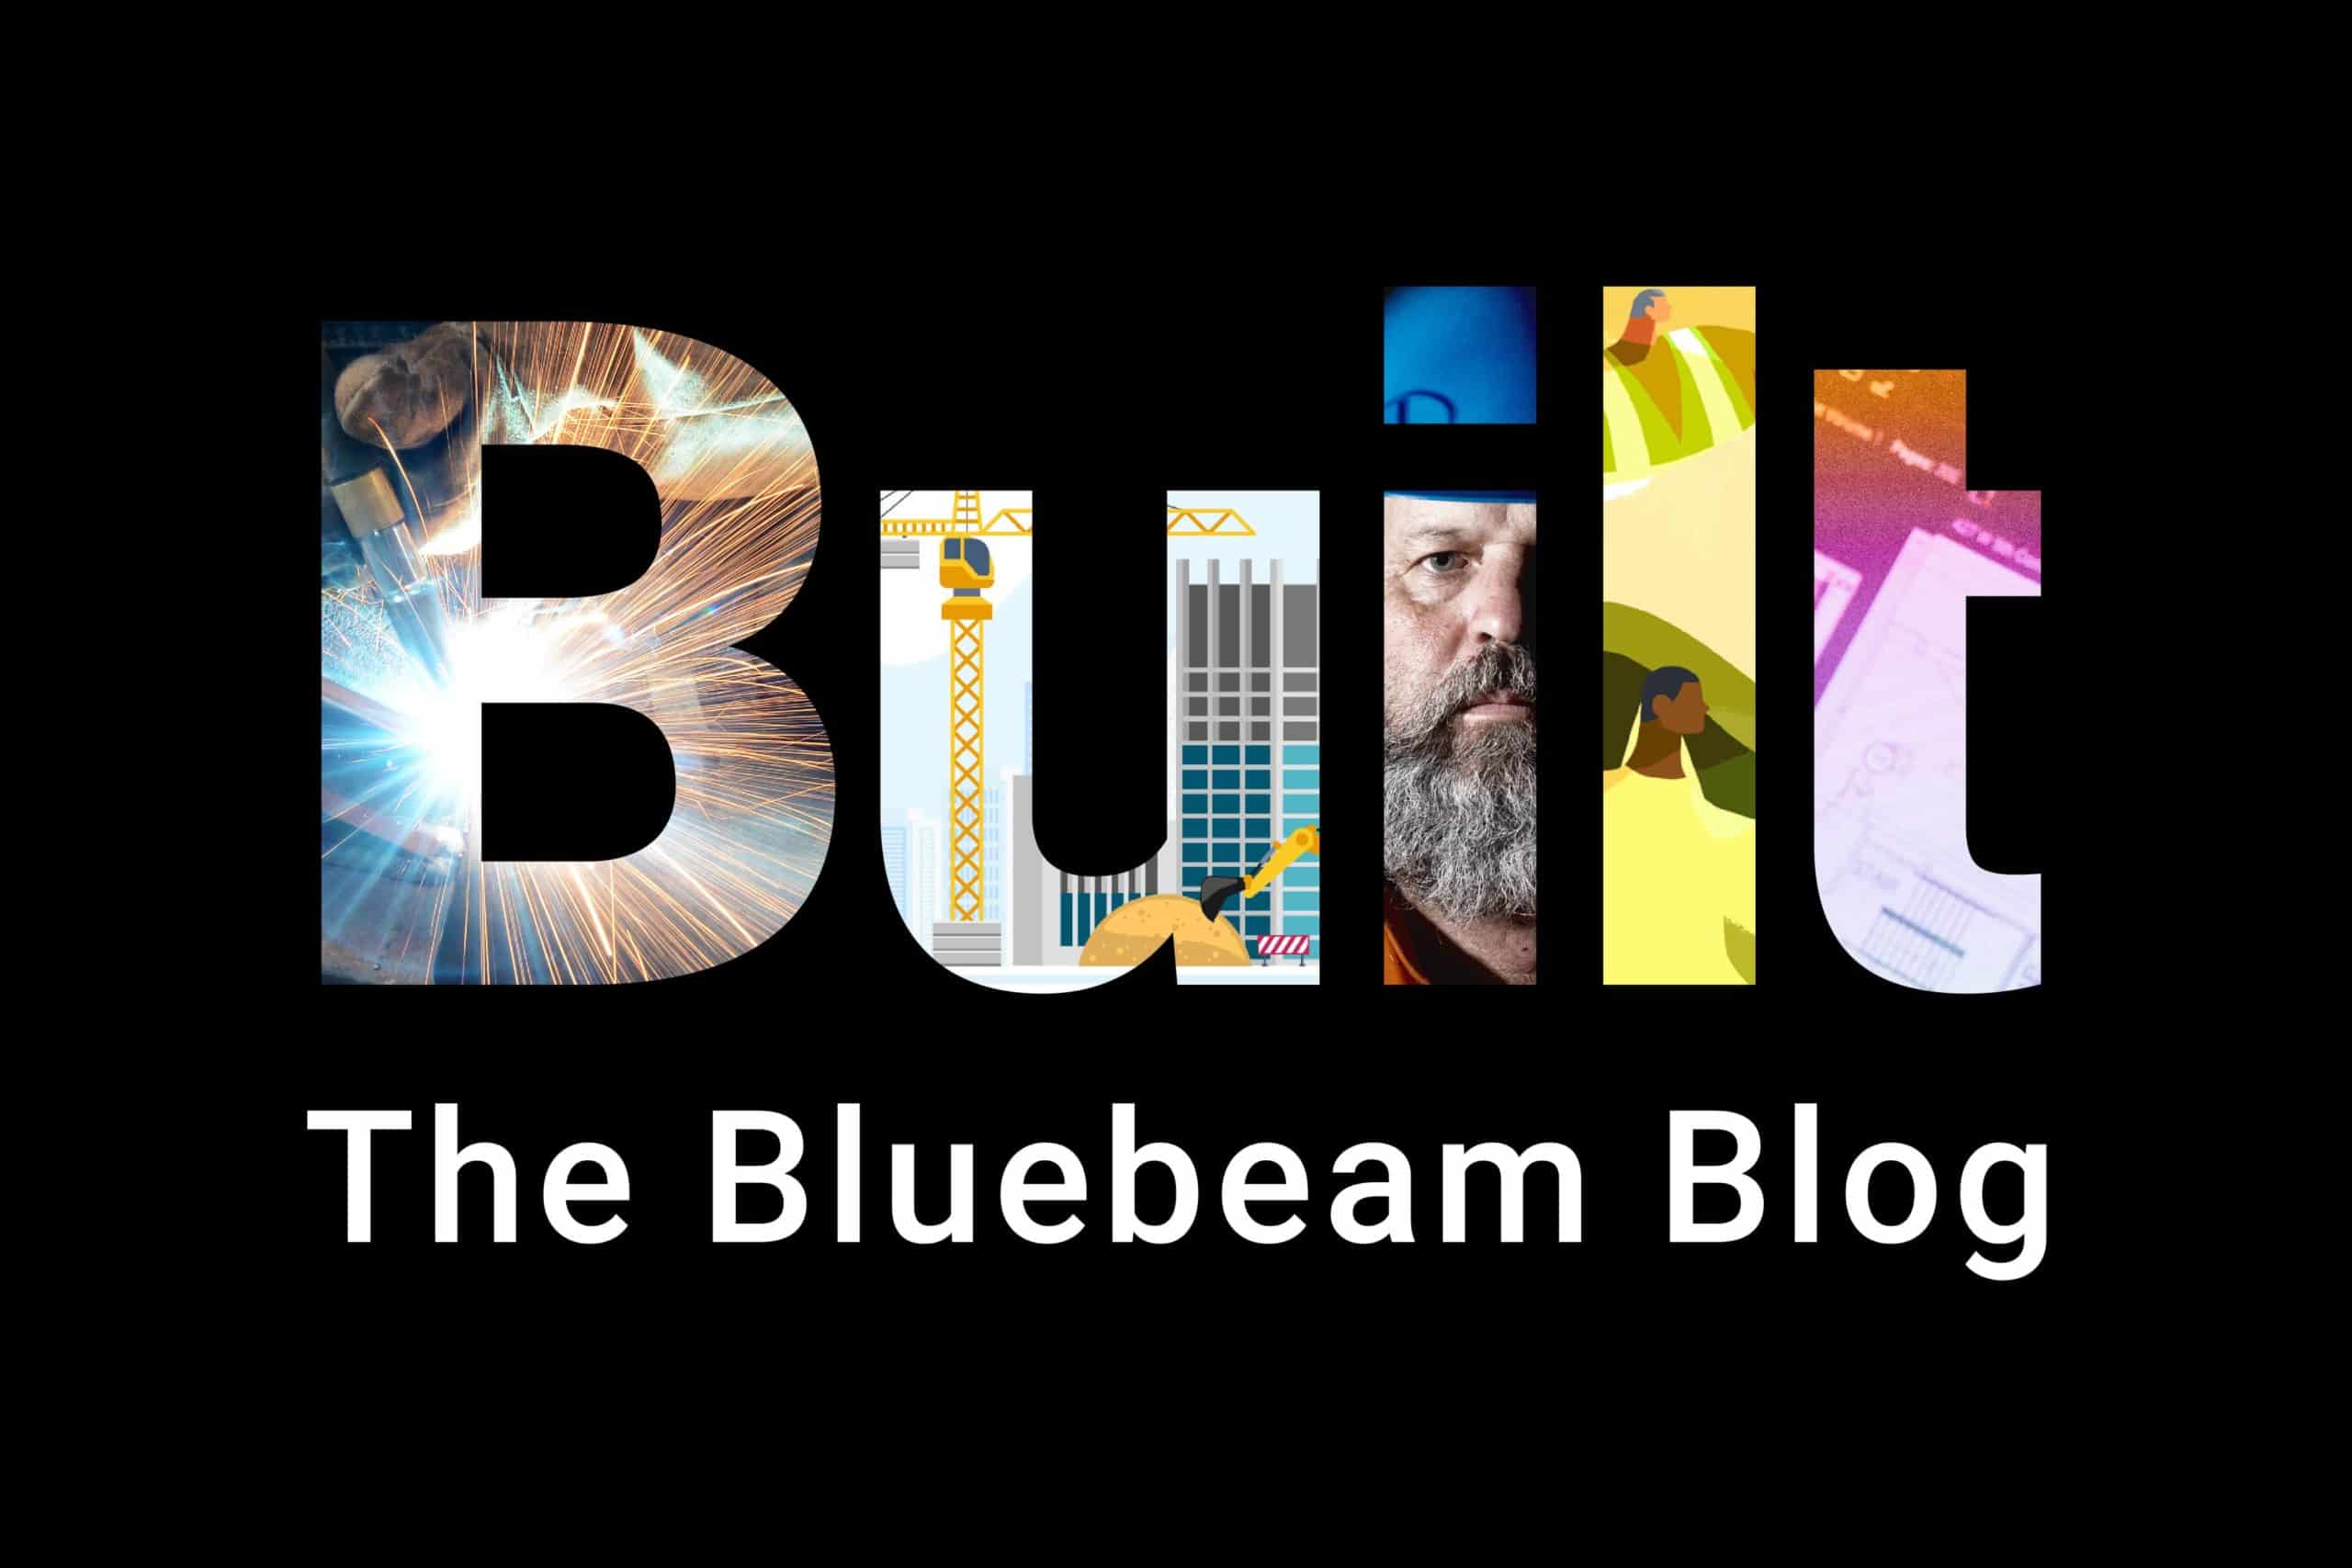 Det här är Built, the Bluebeam Blog